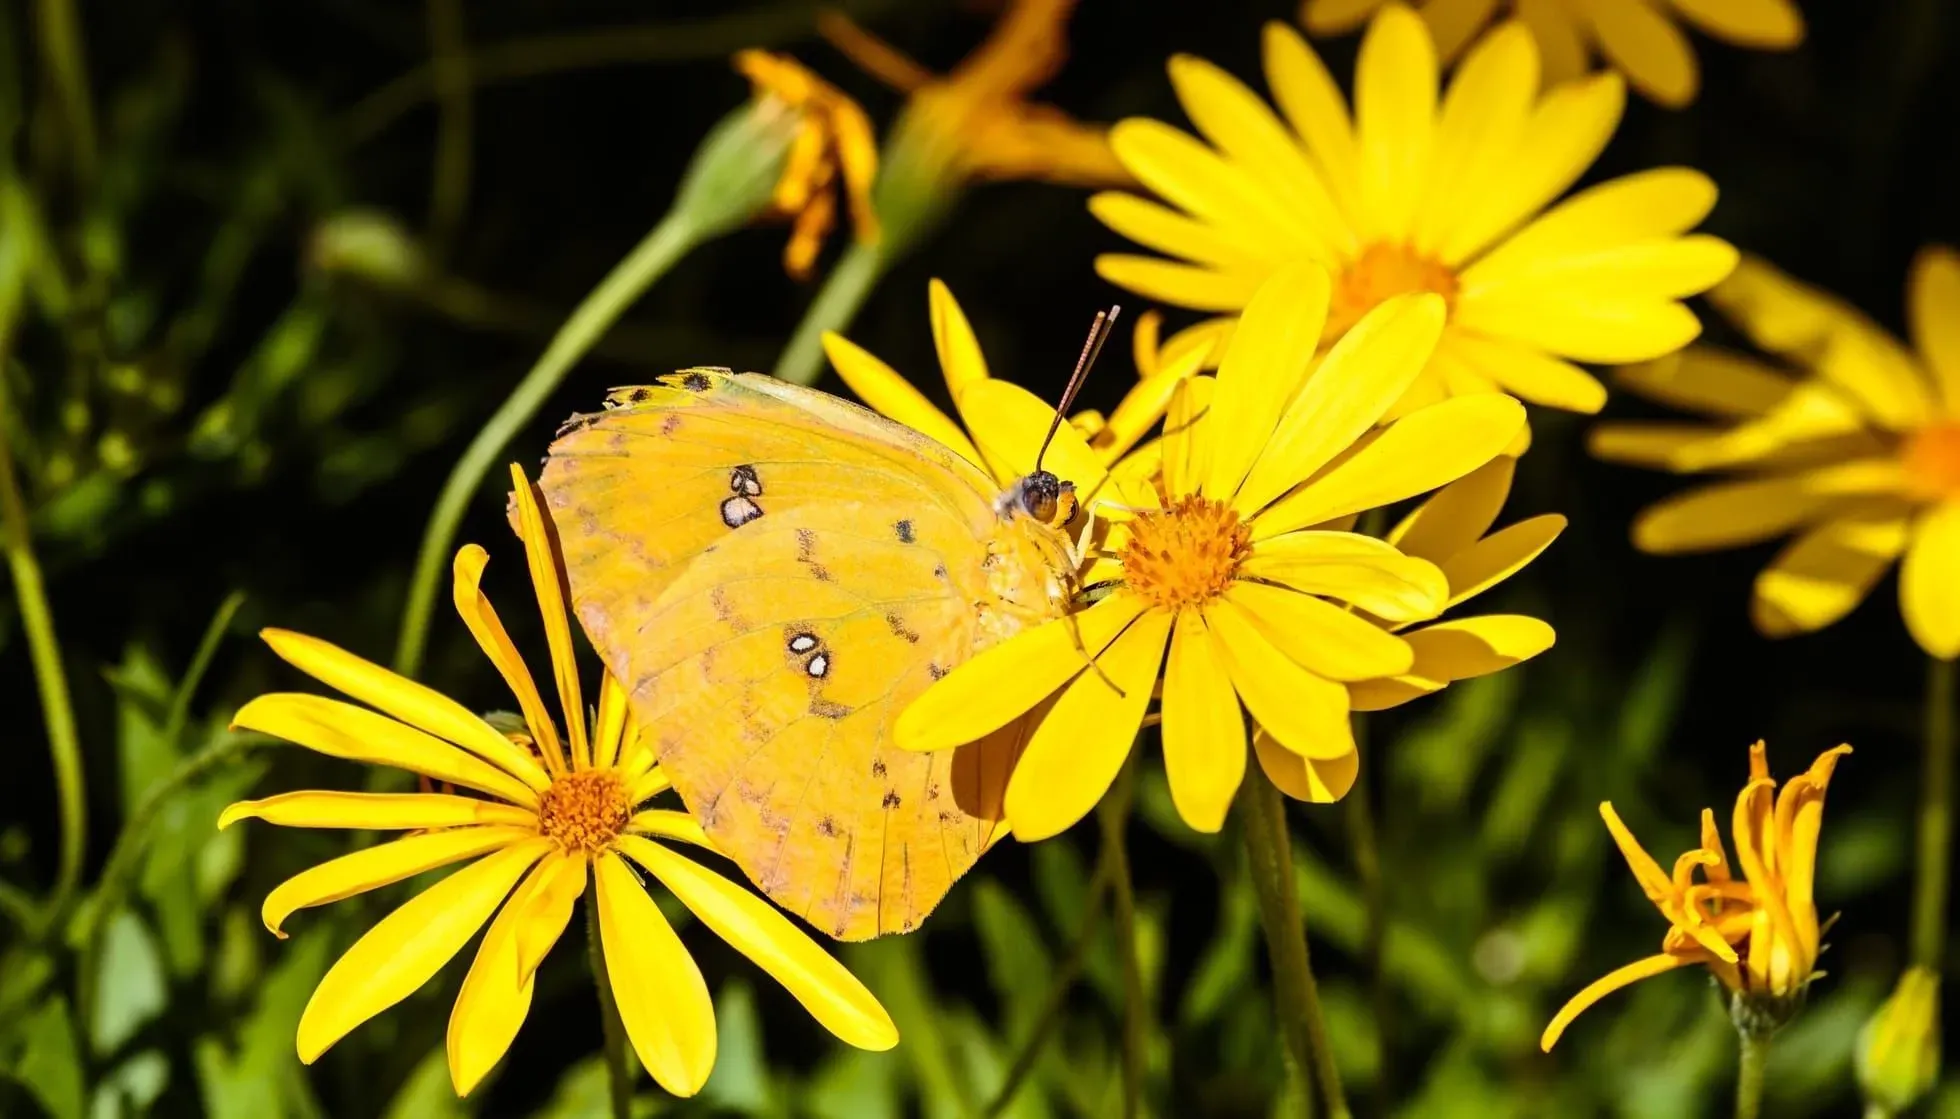 Cloudless Sulphur Butterfly